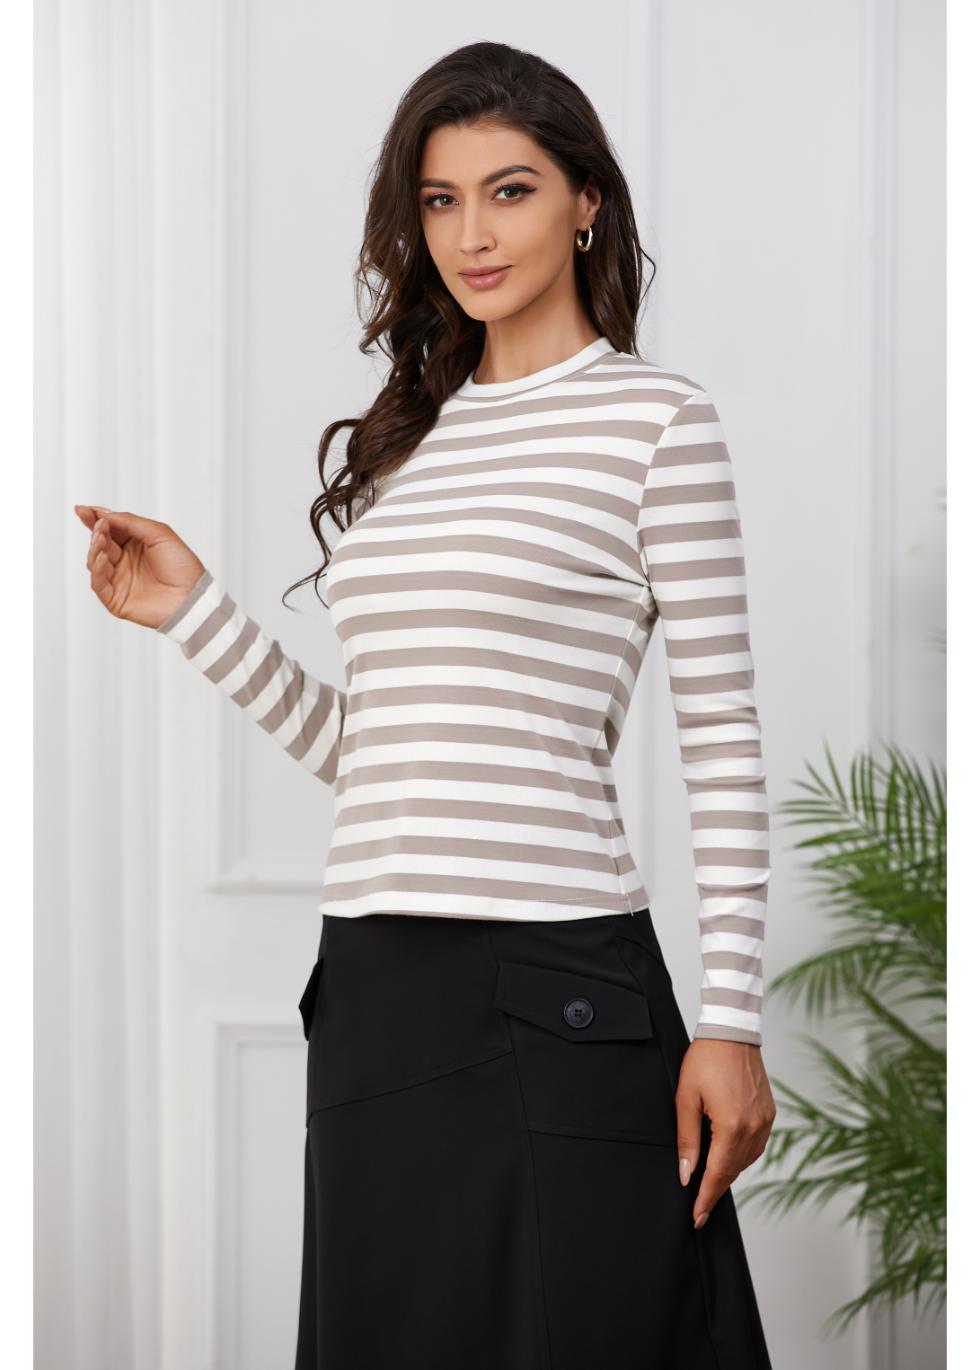 Khaki and White Striped Shirt